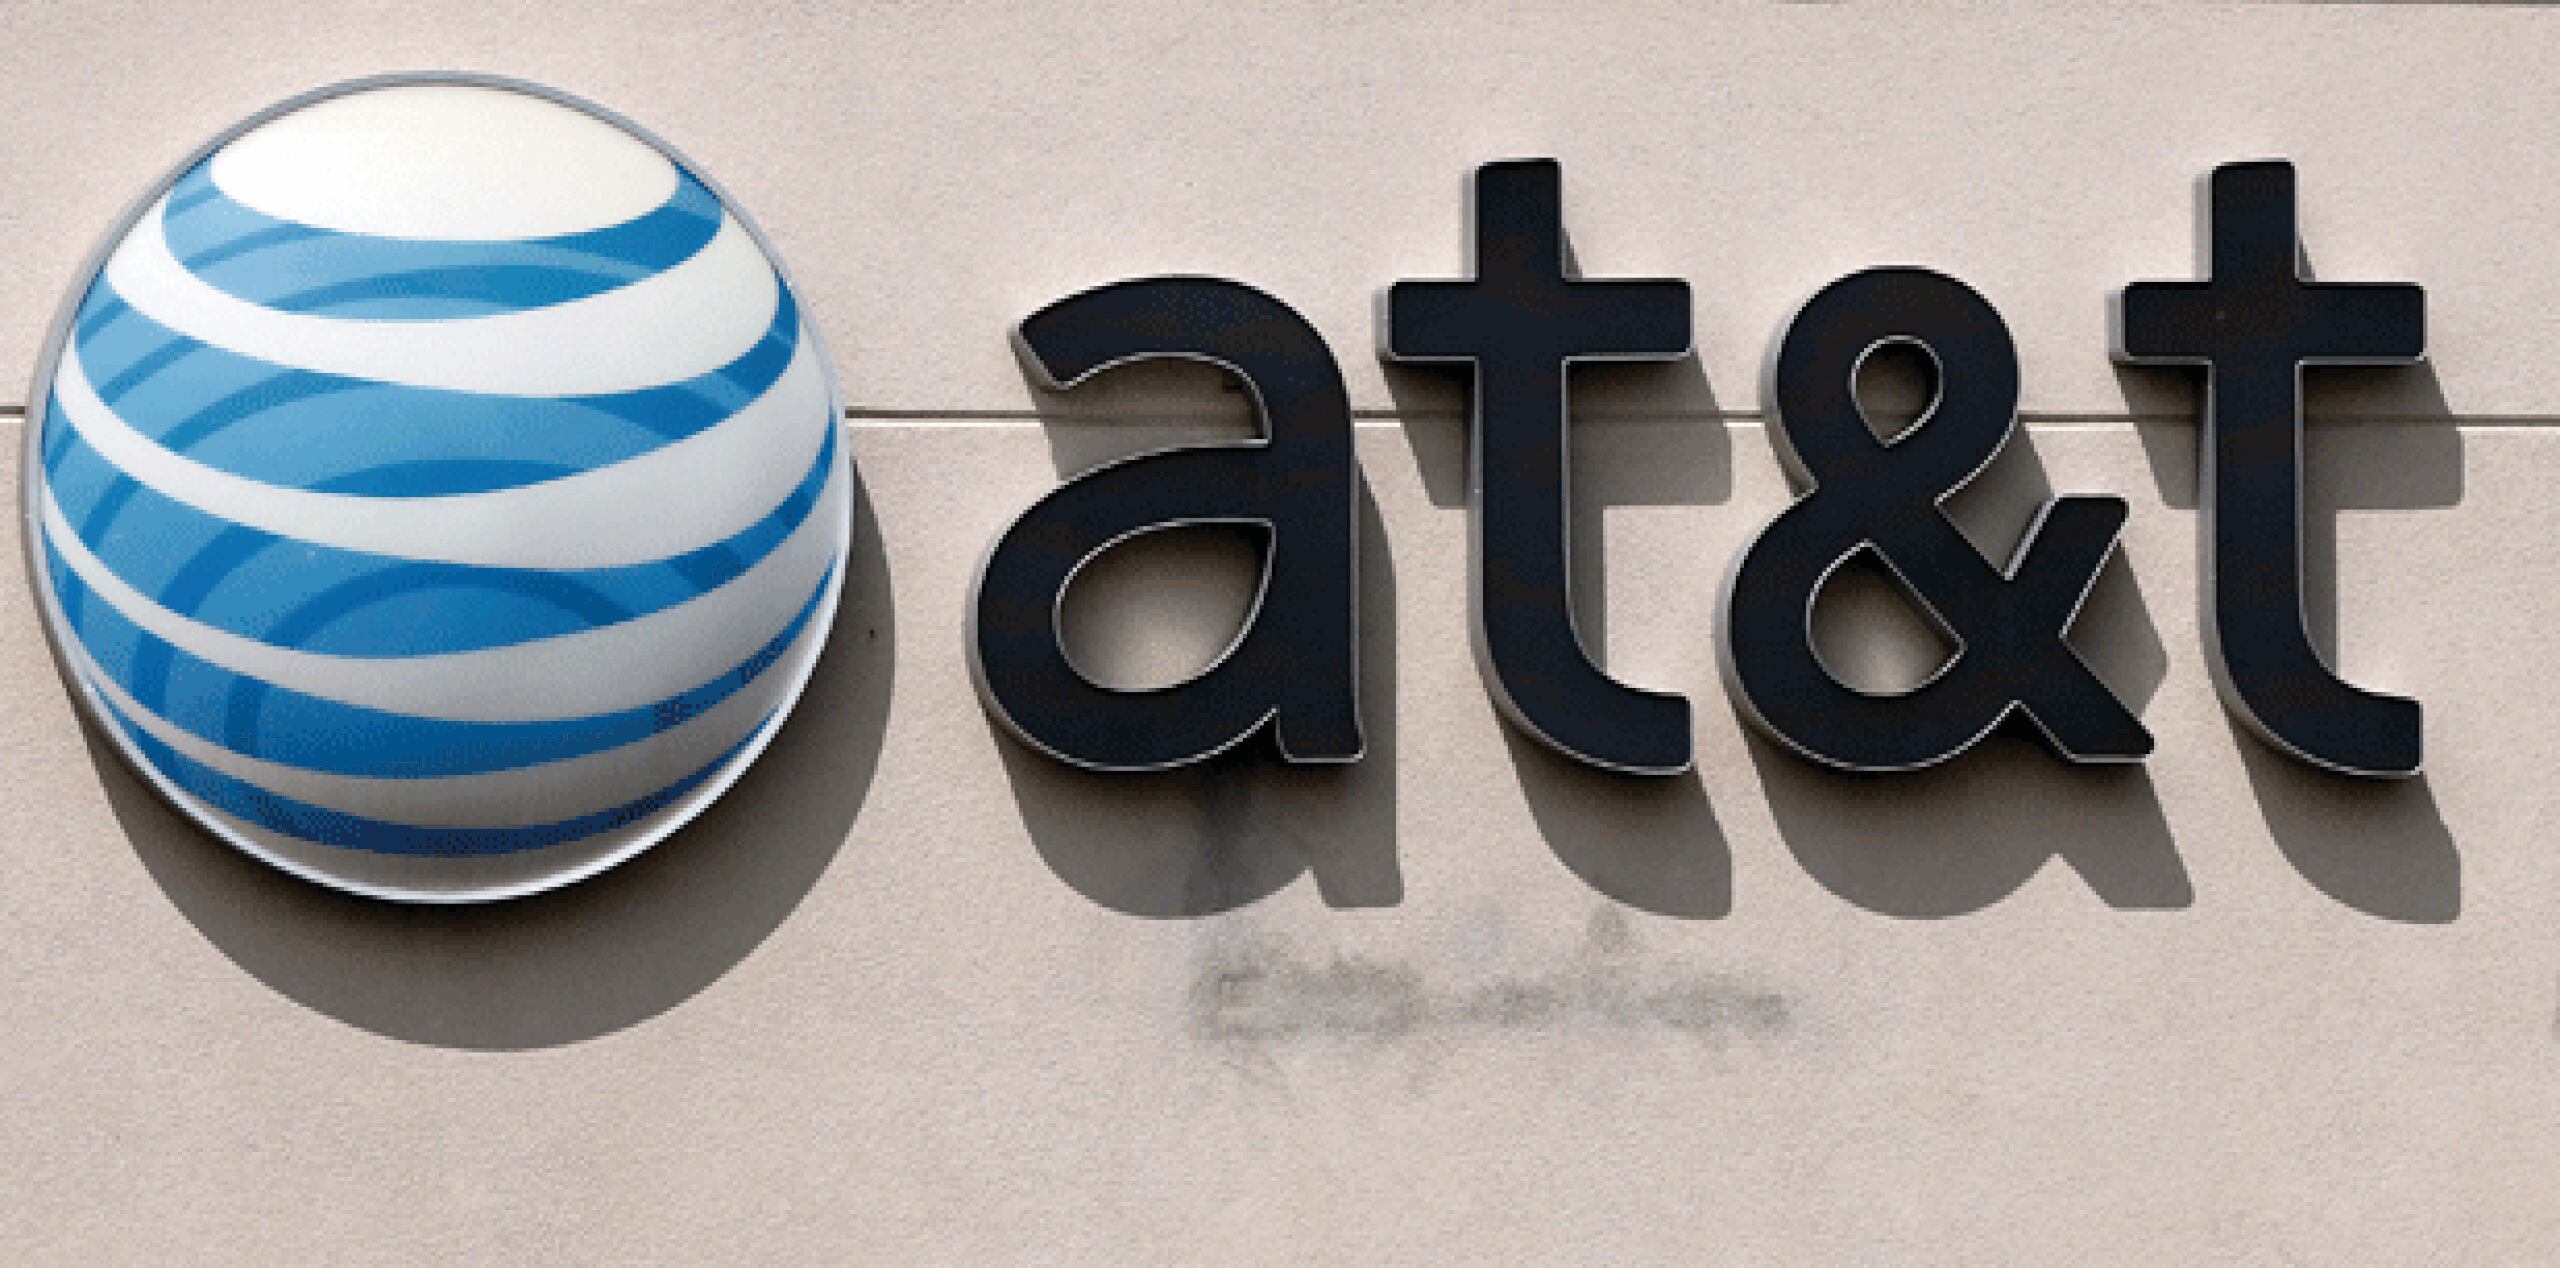 El regulador estadounidense multó con 100 millones de dólares a AT&T Mobility LLC por ofrecer datos "ilimitados" a los clientes, pero luego reducir la velocidad de navegación en internet una vez que llegaba a cierto límite. (Archivo)